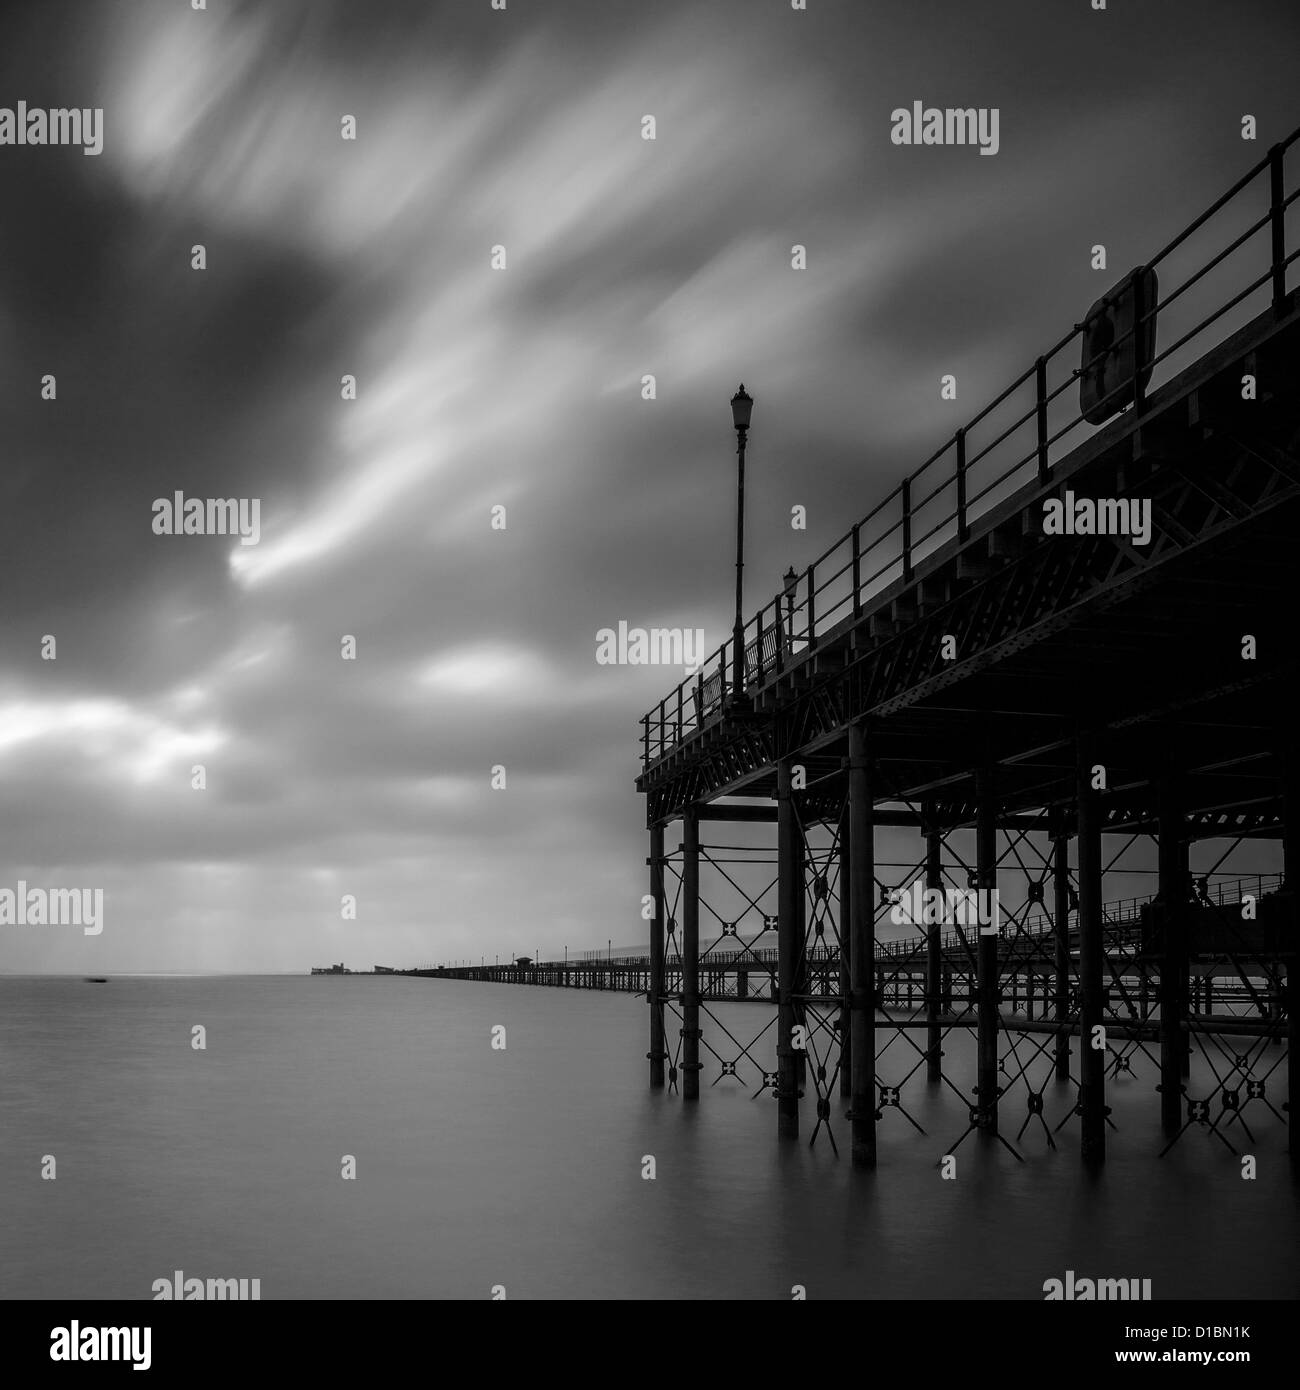 Southend, UK. 13 décembre 2012. Un faible soleil tente de briser une couverture de nuage sur une journée froide et sombre à Southend-on-Sea. Une longue exposition a aplani la mer agitée Banque D'Images